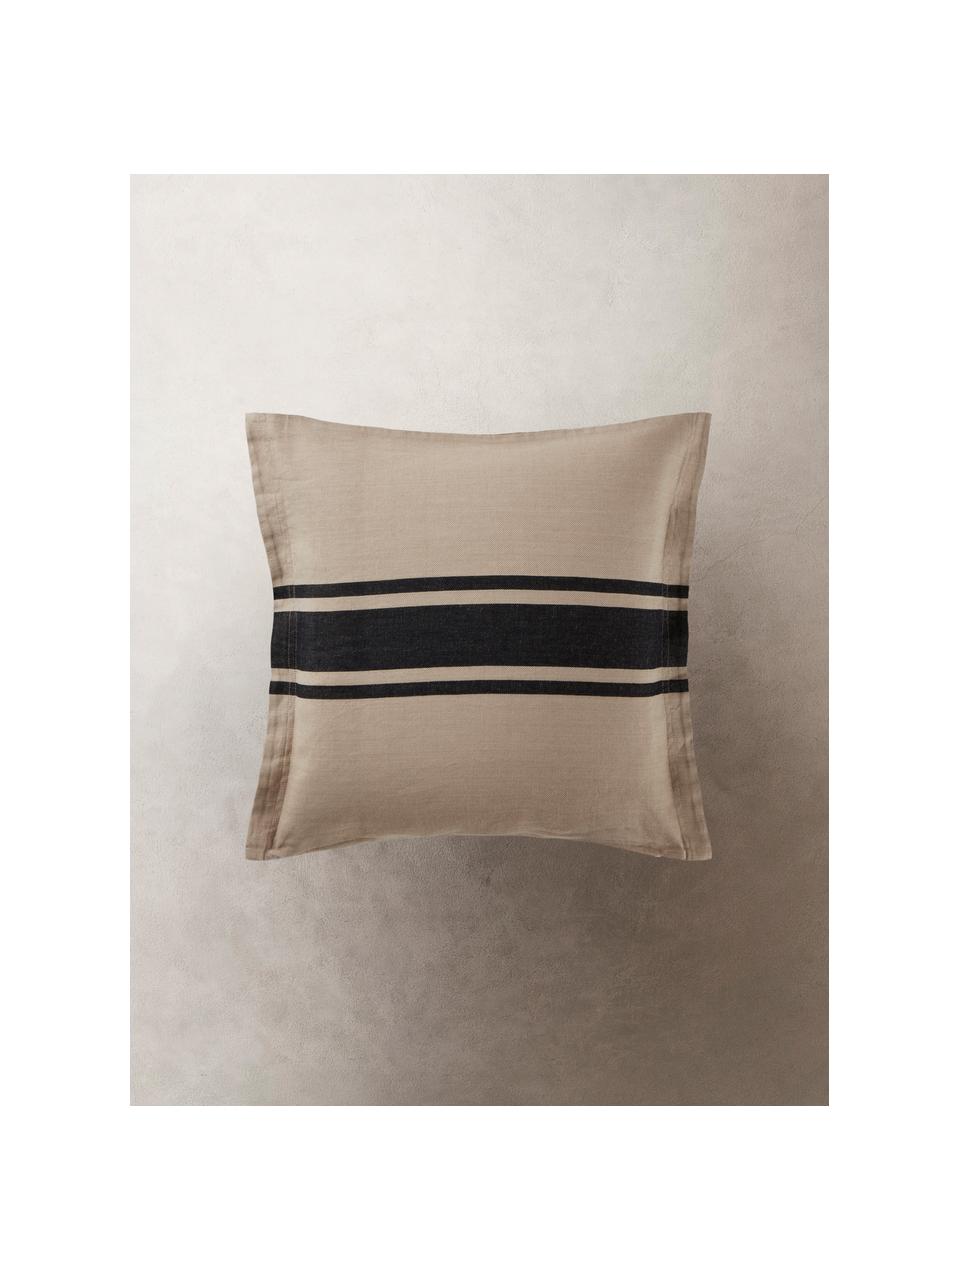 Poszewka na poduszkę z bawełny i lnu Almo, 60% bawełna, 40% len, Beżowy, czarny, S 50 x D 50 cm